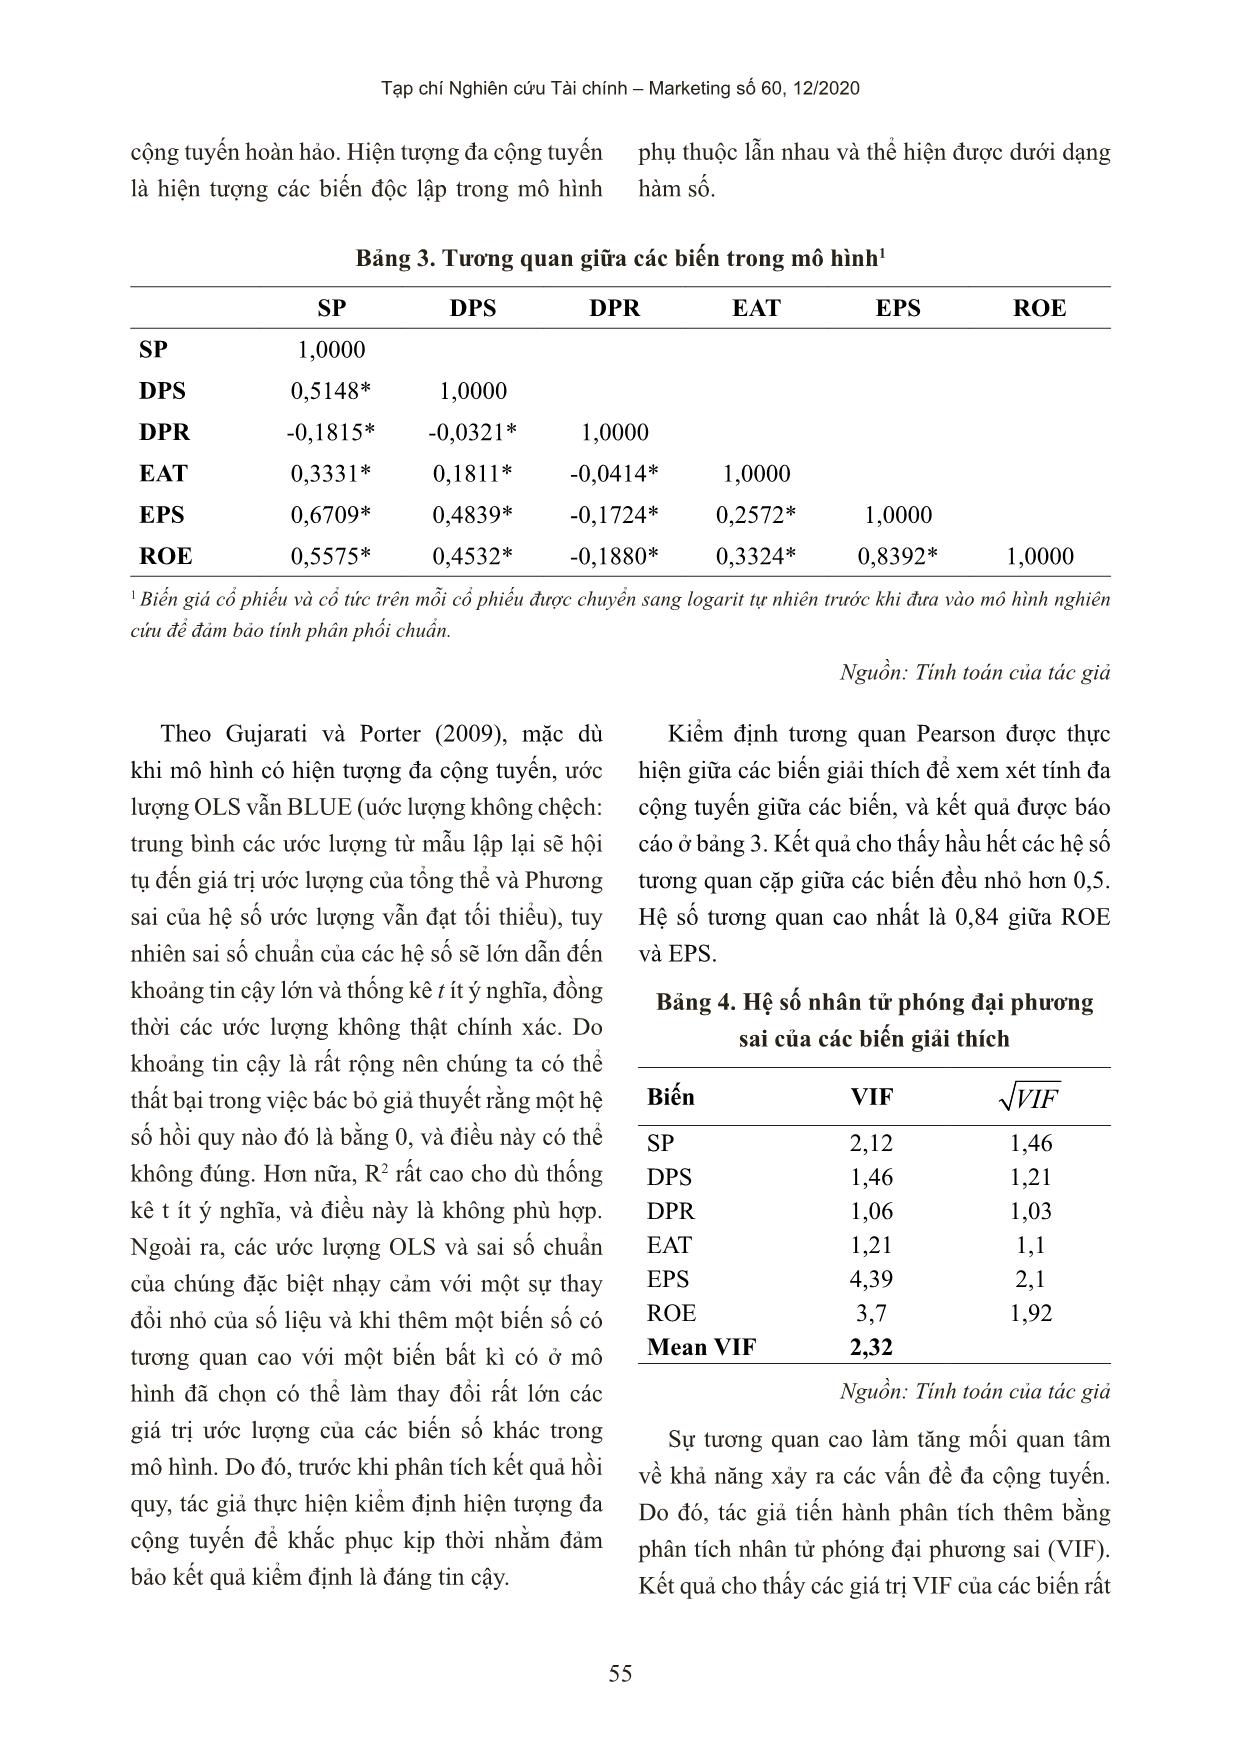 Ảnh hưởng của chính sách cổ tức đến giá cổ phiếu của các công ty niêm yết trên thị trường chứng khoán Việt Nam trang 10